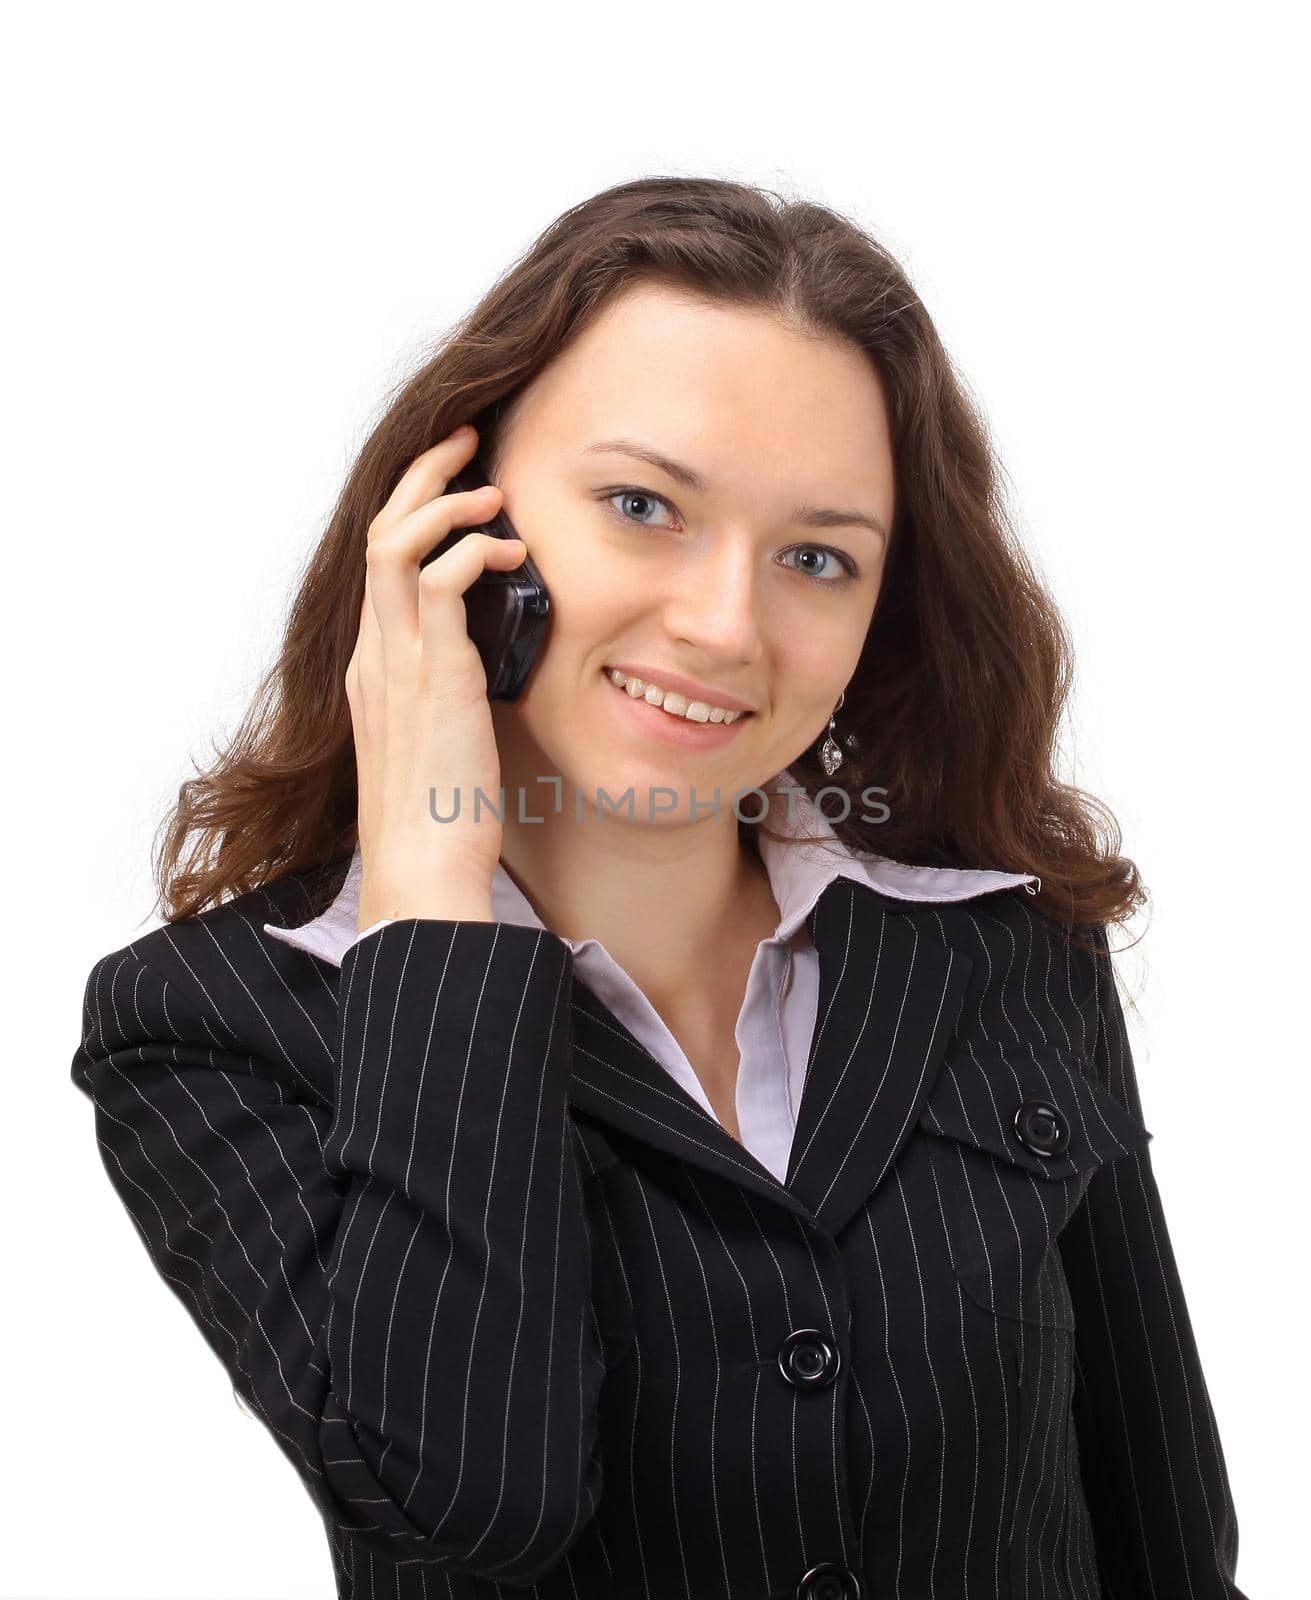 The beautiful business woman ðàçãîâàðèâàíò on the phone on a white background